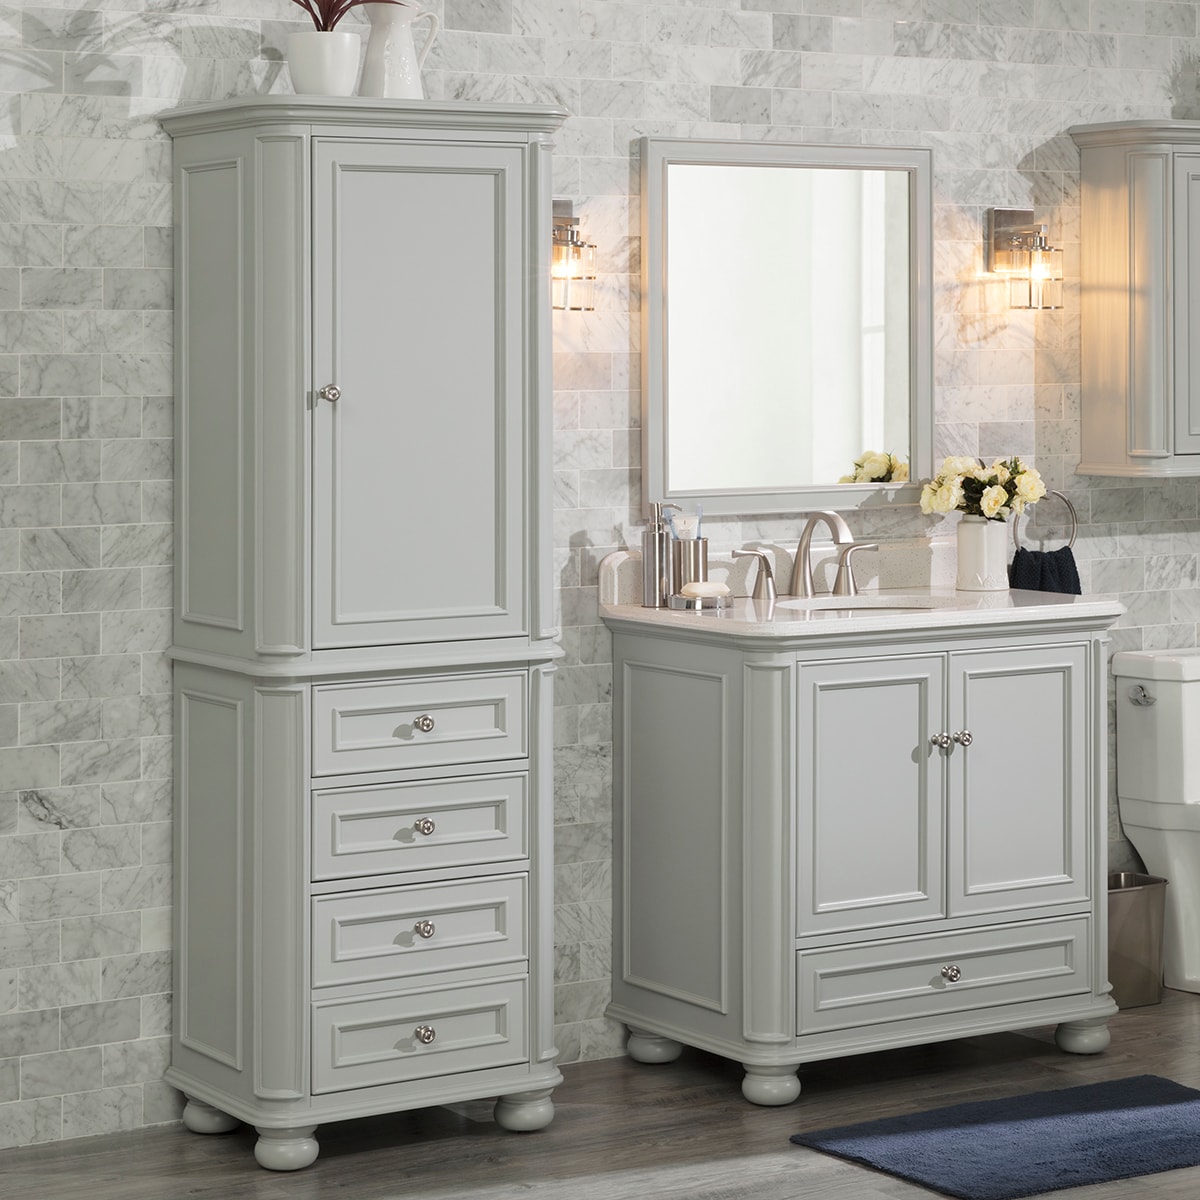 Linen Cabinets At Com, Bathroom Vanity And Linen Closet Sets